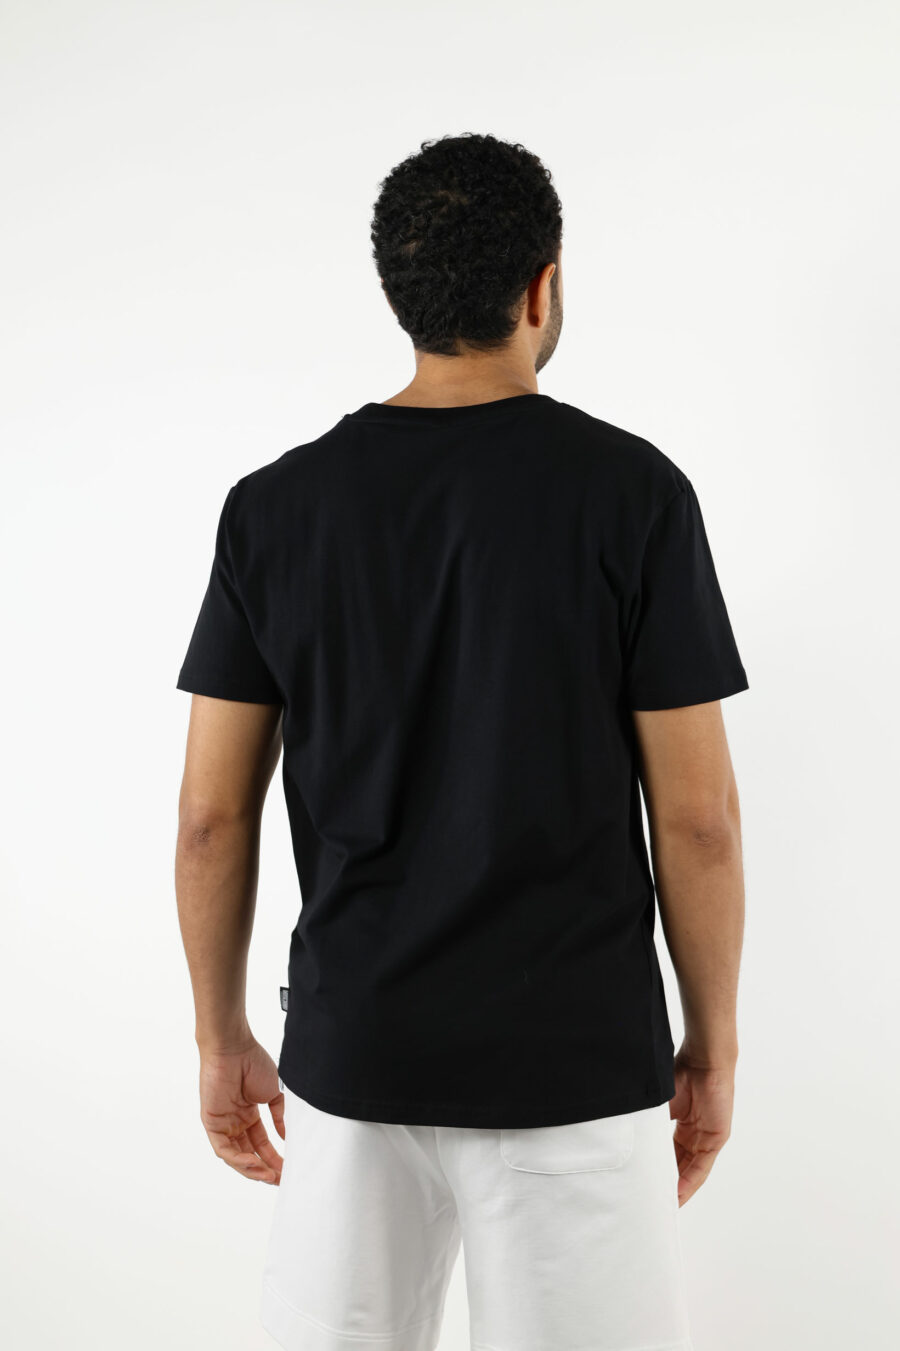 T-shirt noir avec mini ours "underbear" en caoutchouc blanc - 111016